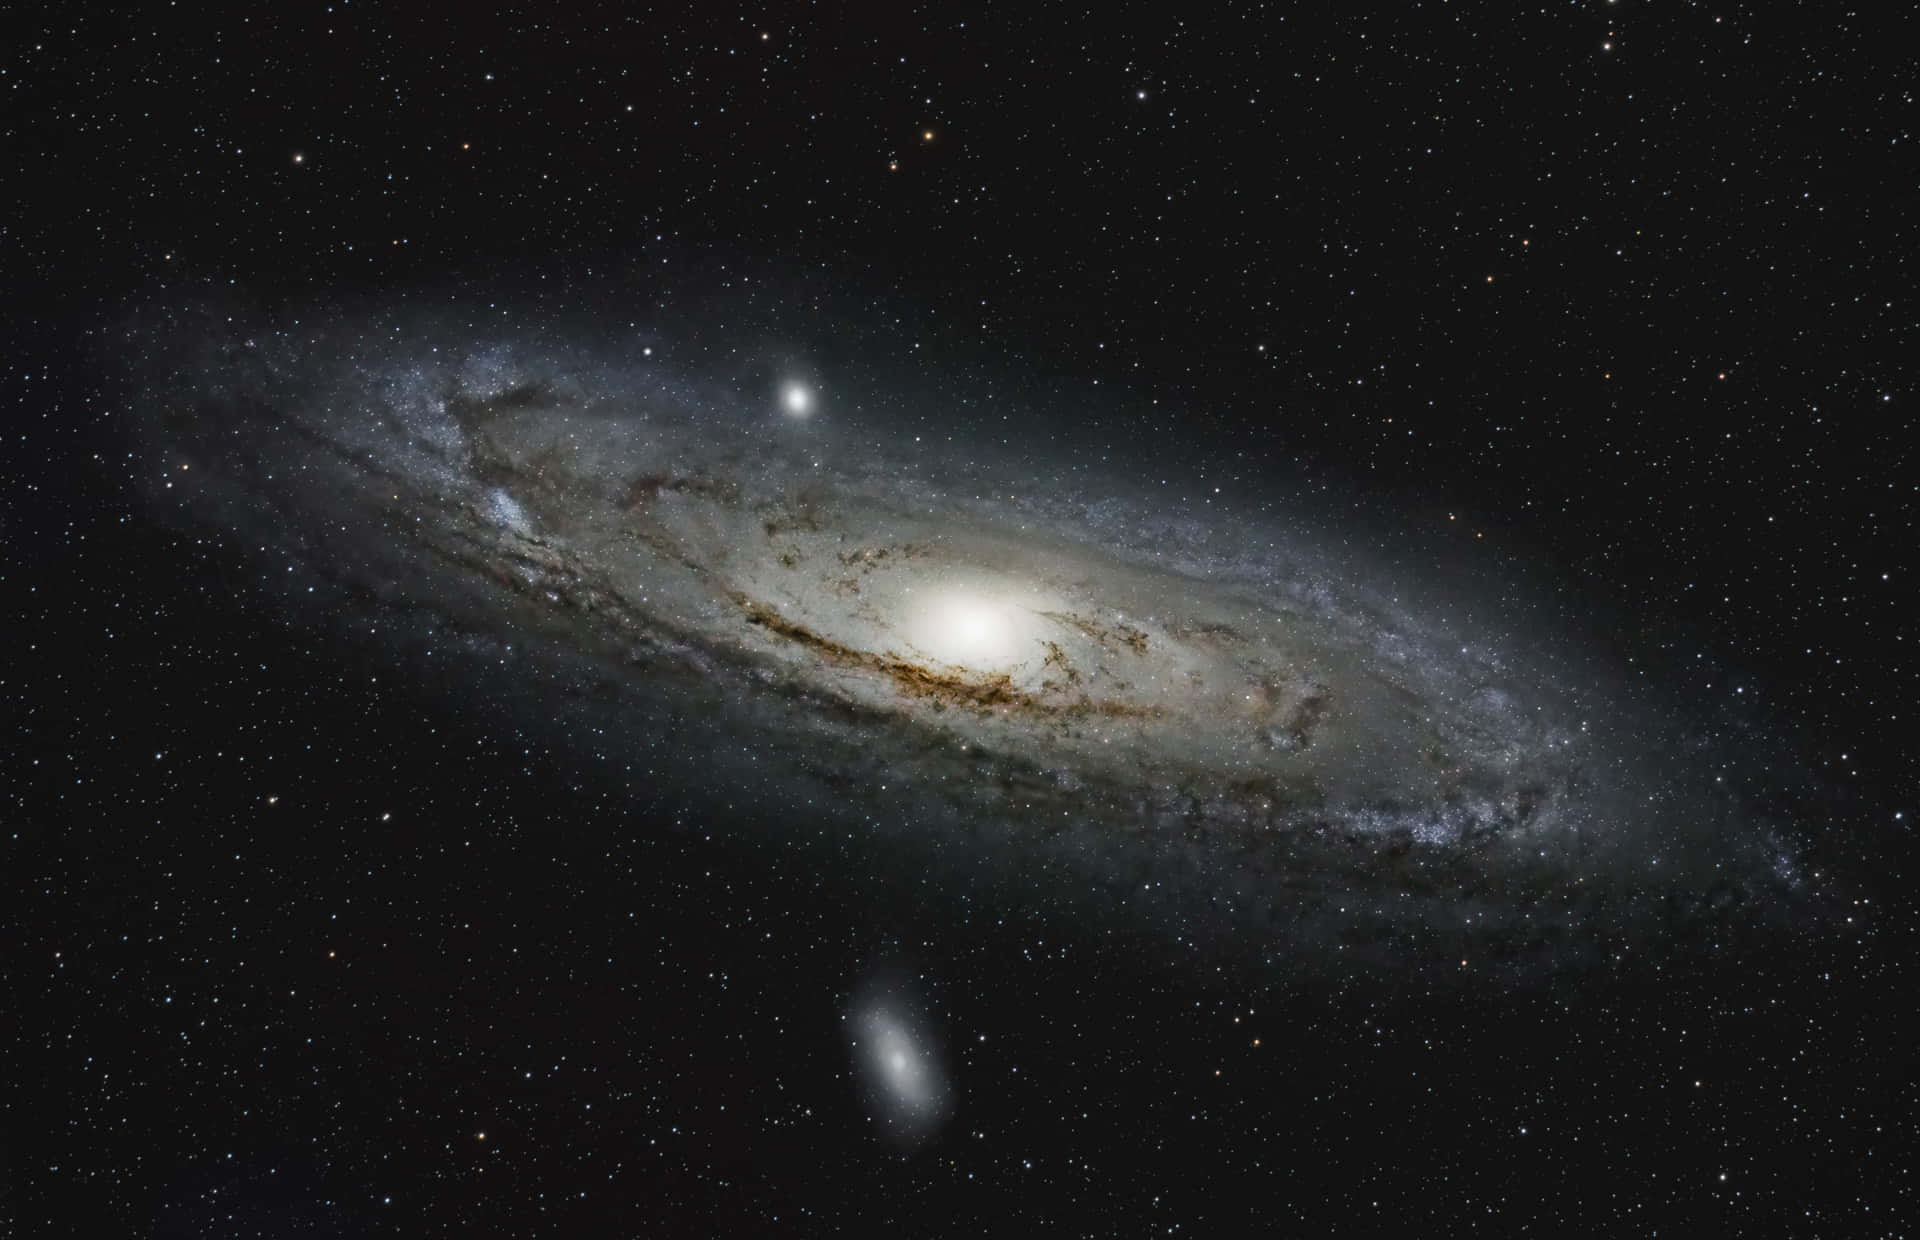 Andromeda Galaxy 4k 5824 X 3760 Wallpaper